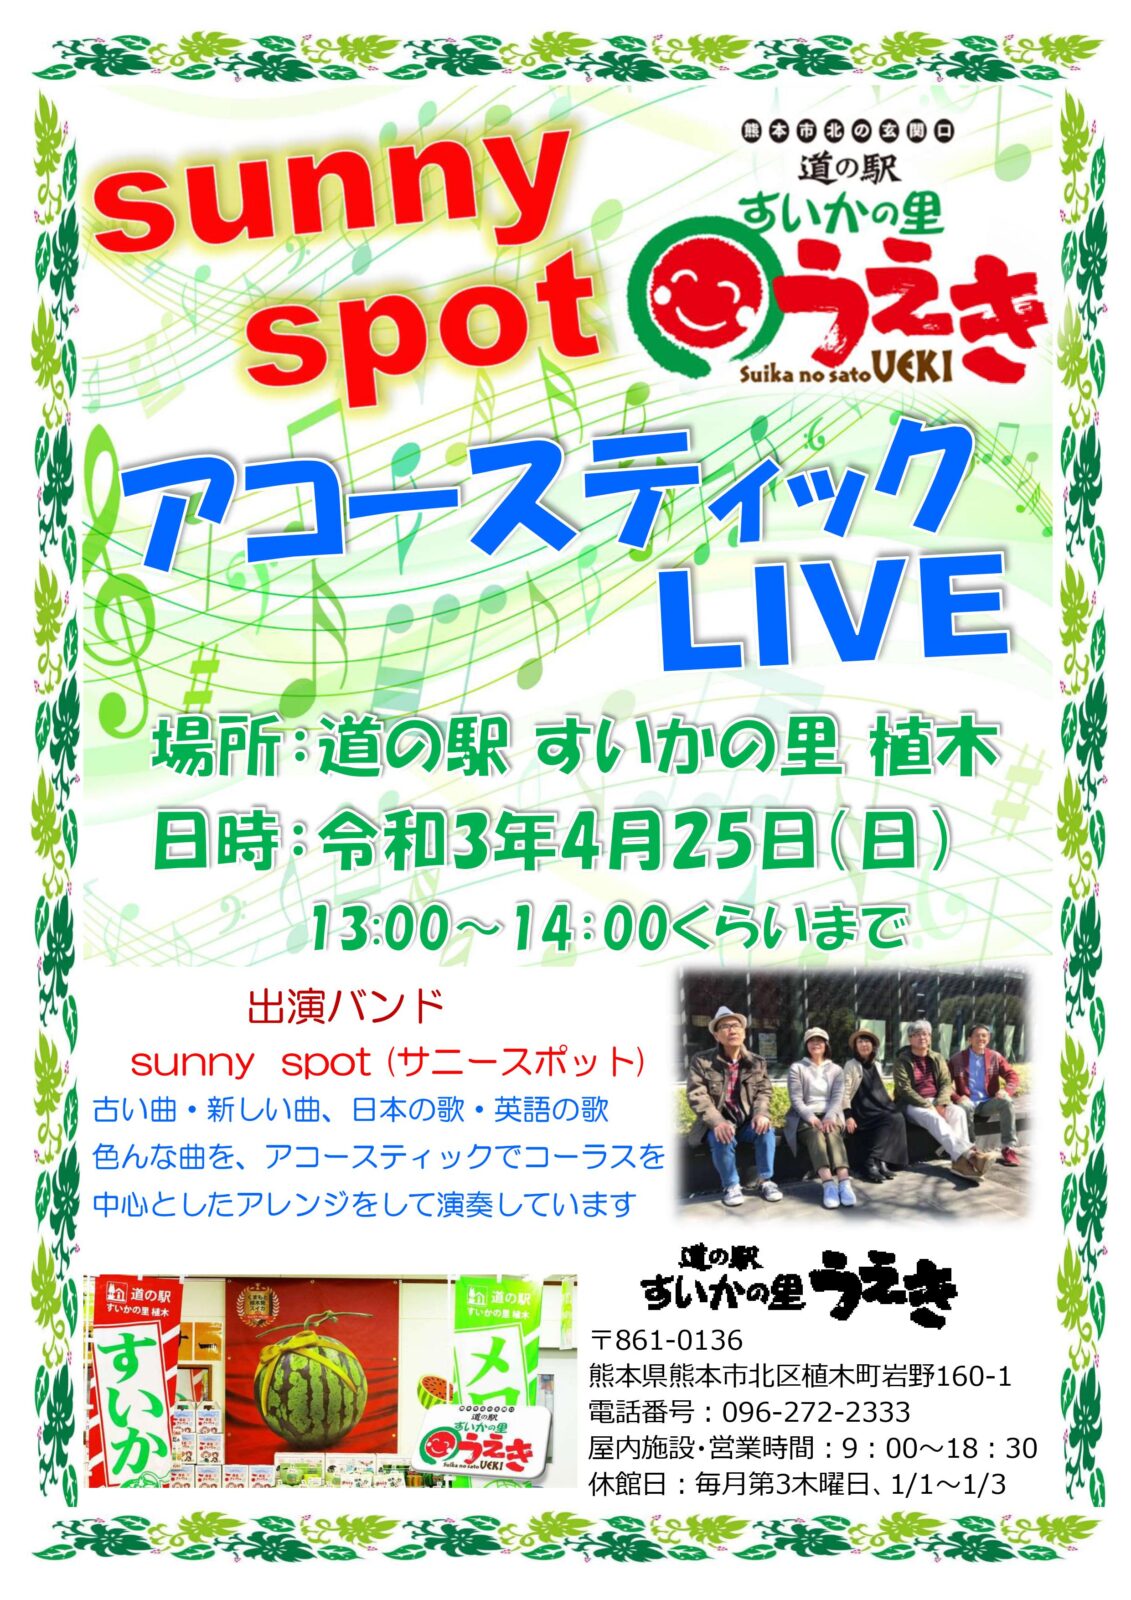 21 04 25 日 Sunny Spot アコースティックライブ開催 道の駅 すいかの里 植木